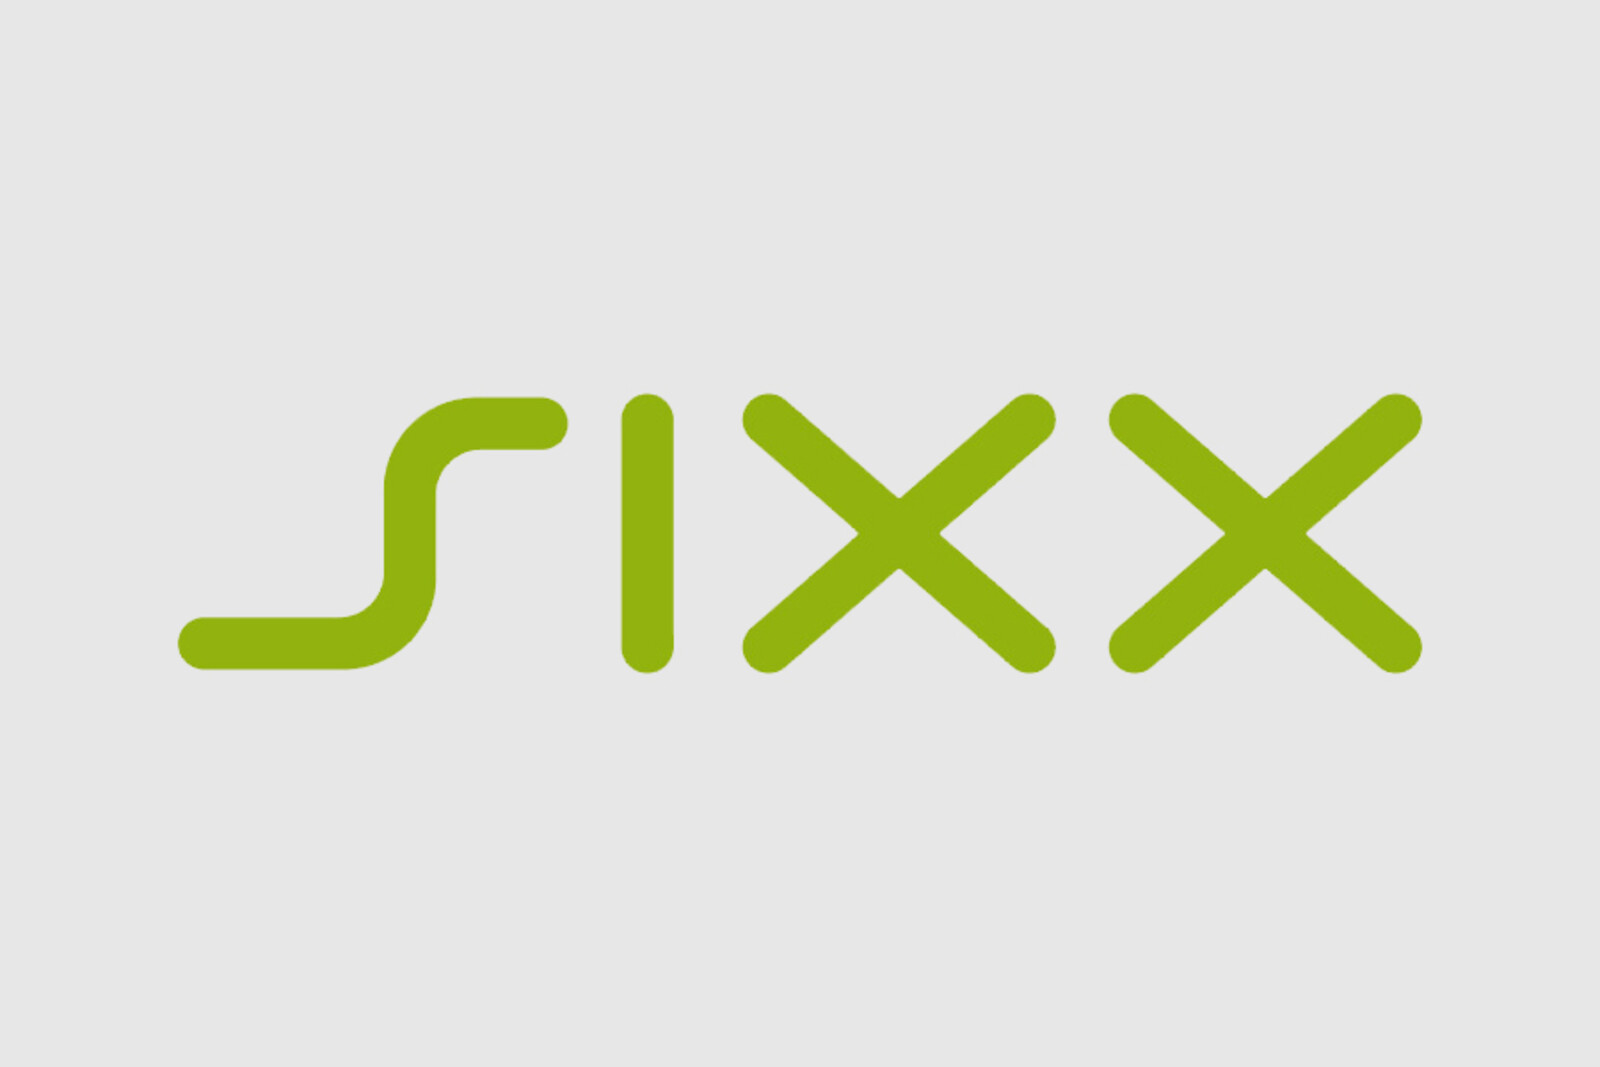 Logo des TV-Senders SIXX